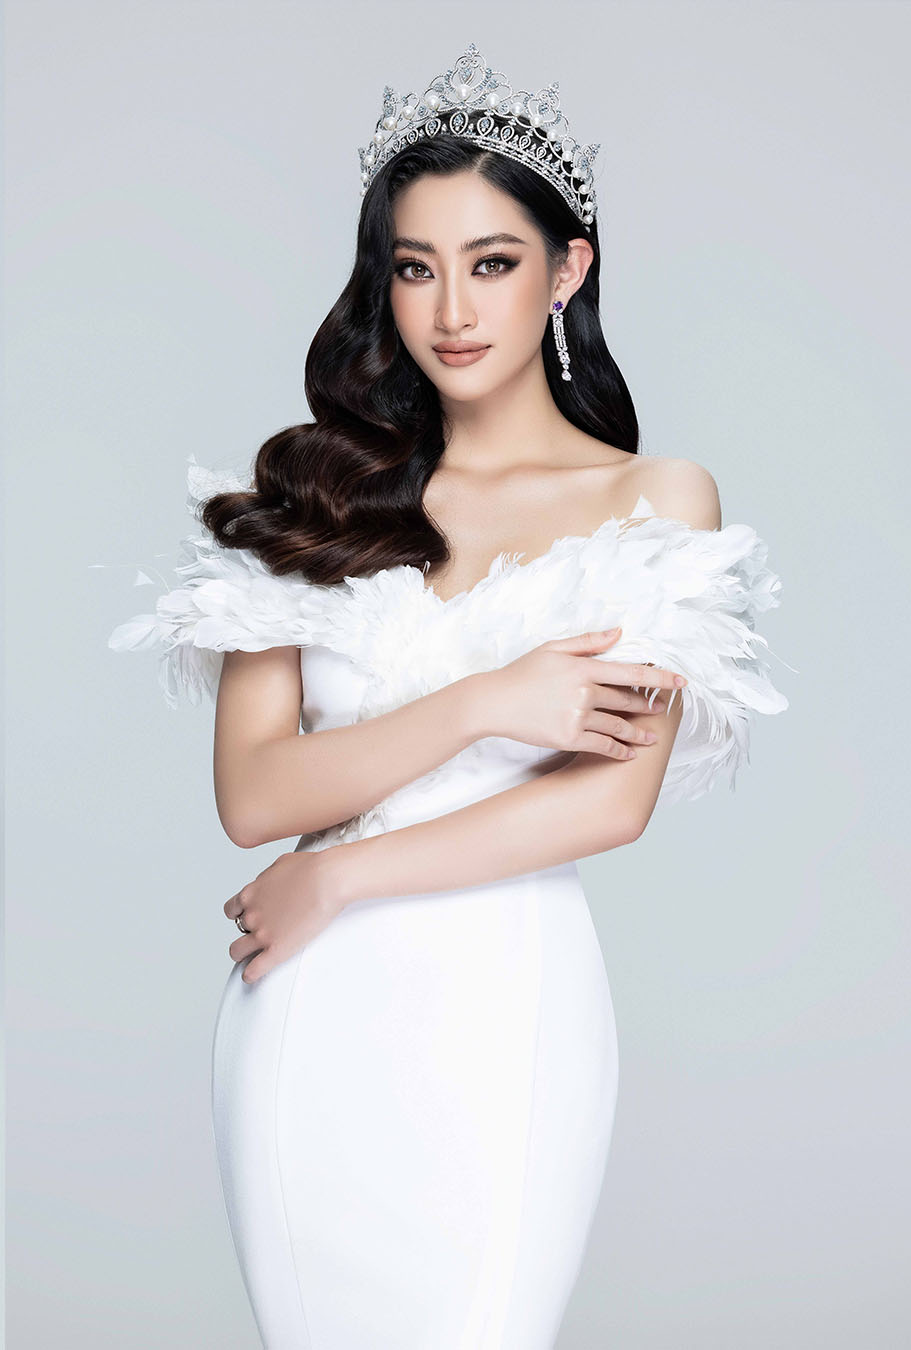 Với bộ váy trễ vai màu trắng, Hoa hậu Lương Thùy Linh khoe nhan sắc thanh lịch, nền nã của một 'hoa hậu tri thức' như cách công chúng ưu ái gọi tên cô.